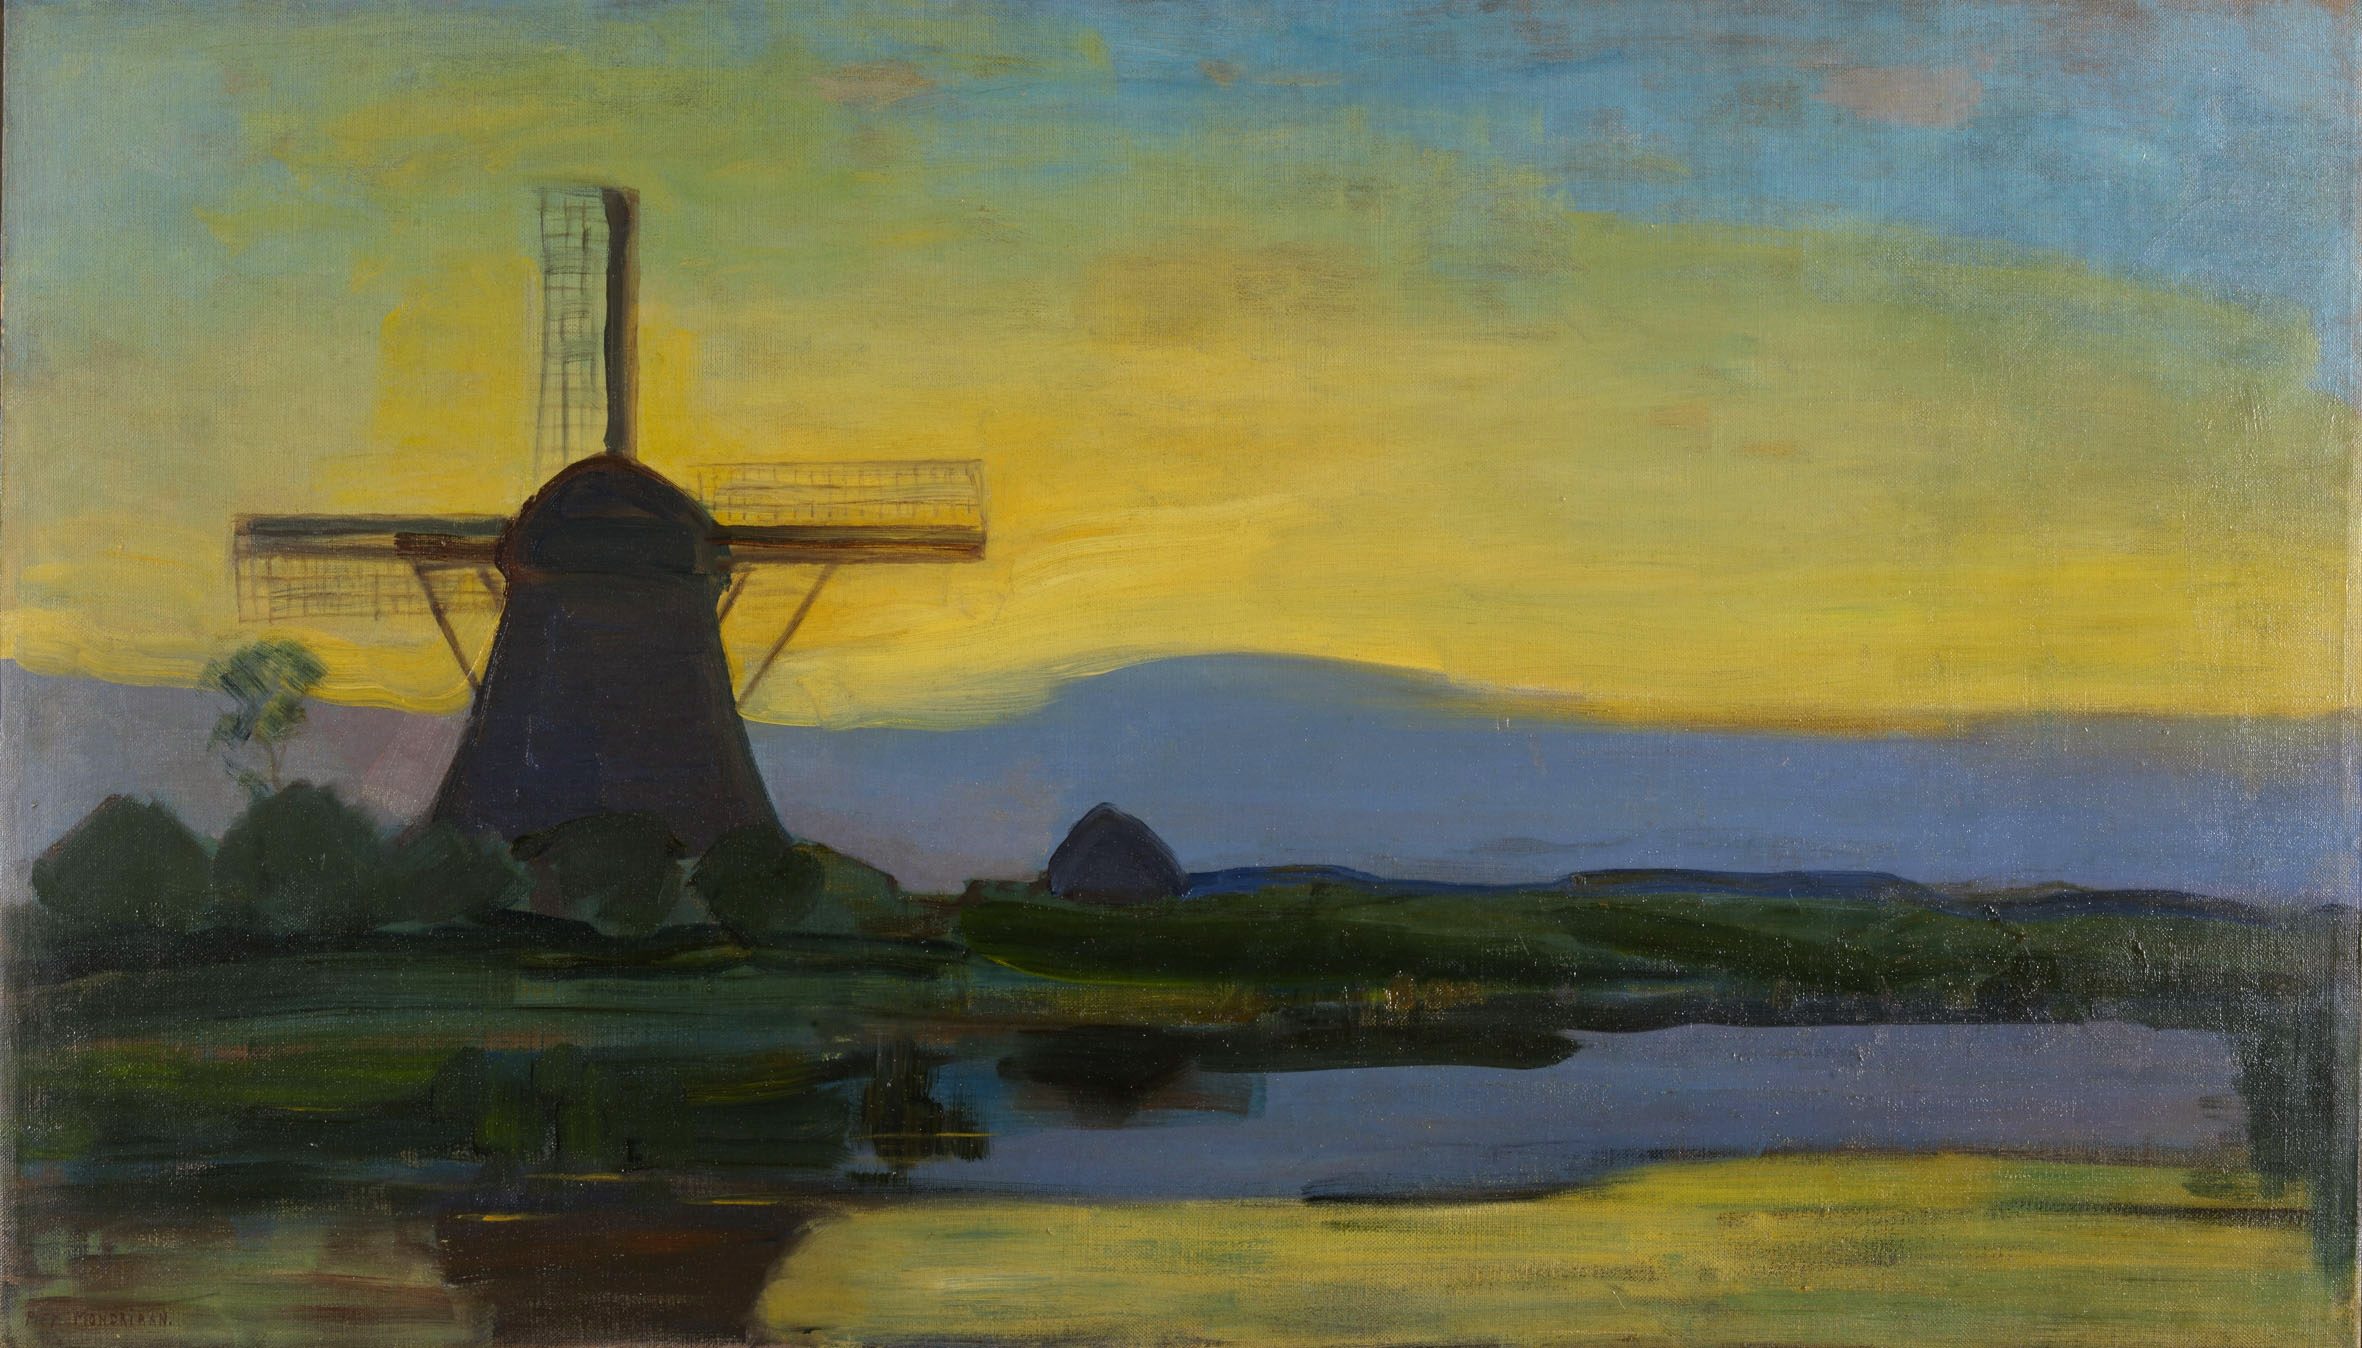 Les 100 ans du mouvement De Stijl/aufildeslieux.fr/ Oostzijde windmill at night, by Piet Mondriaan